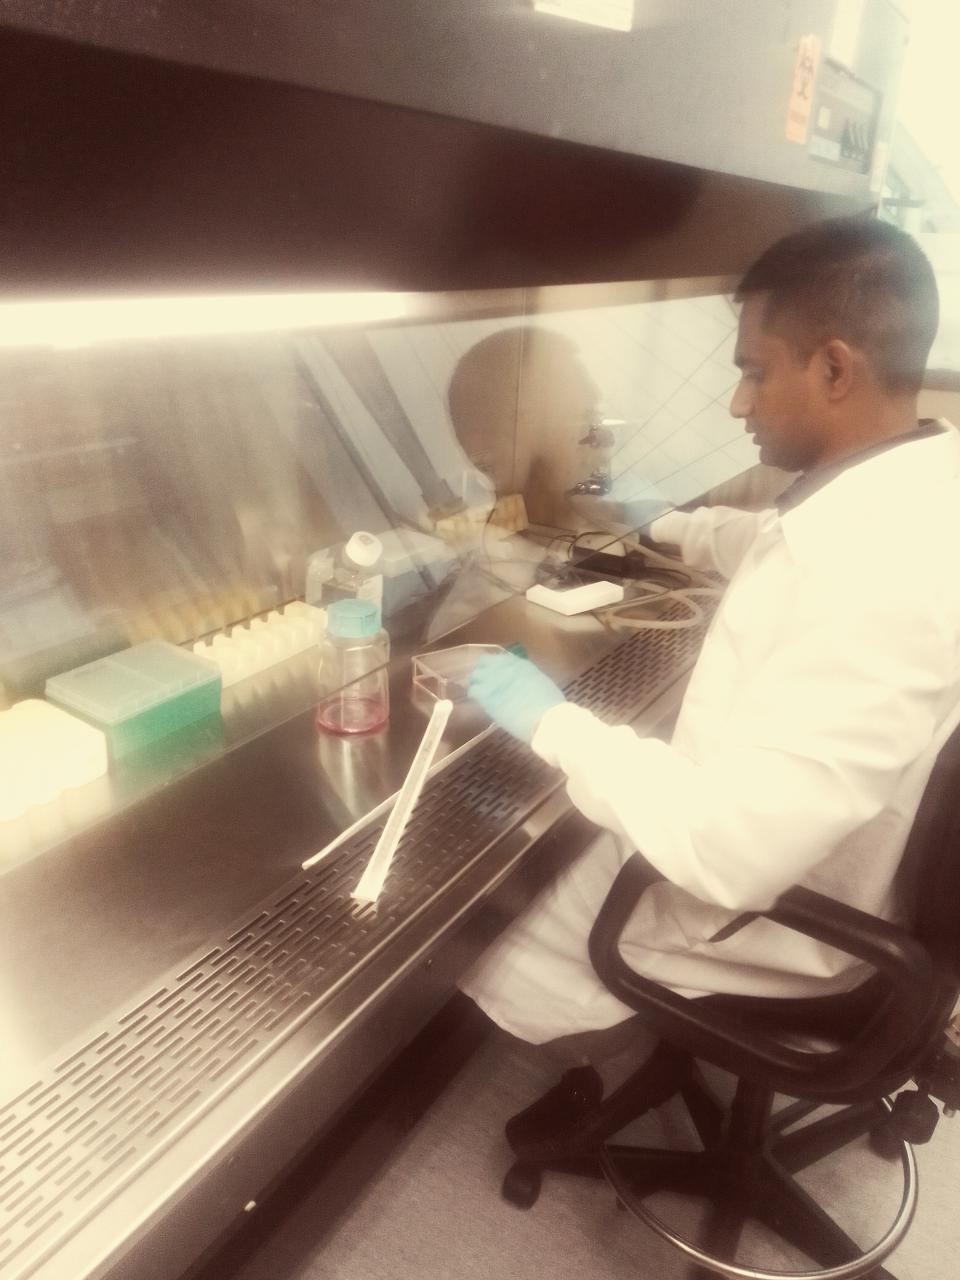 Muddassar Iqbal in a lab coat sits at a fume hood